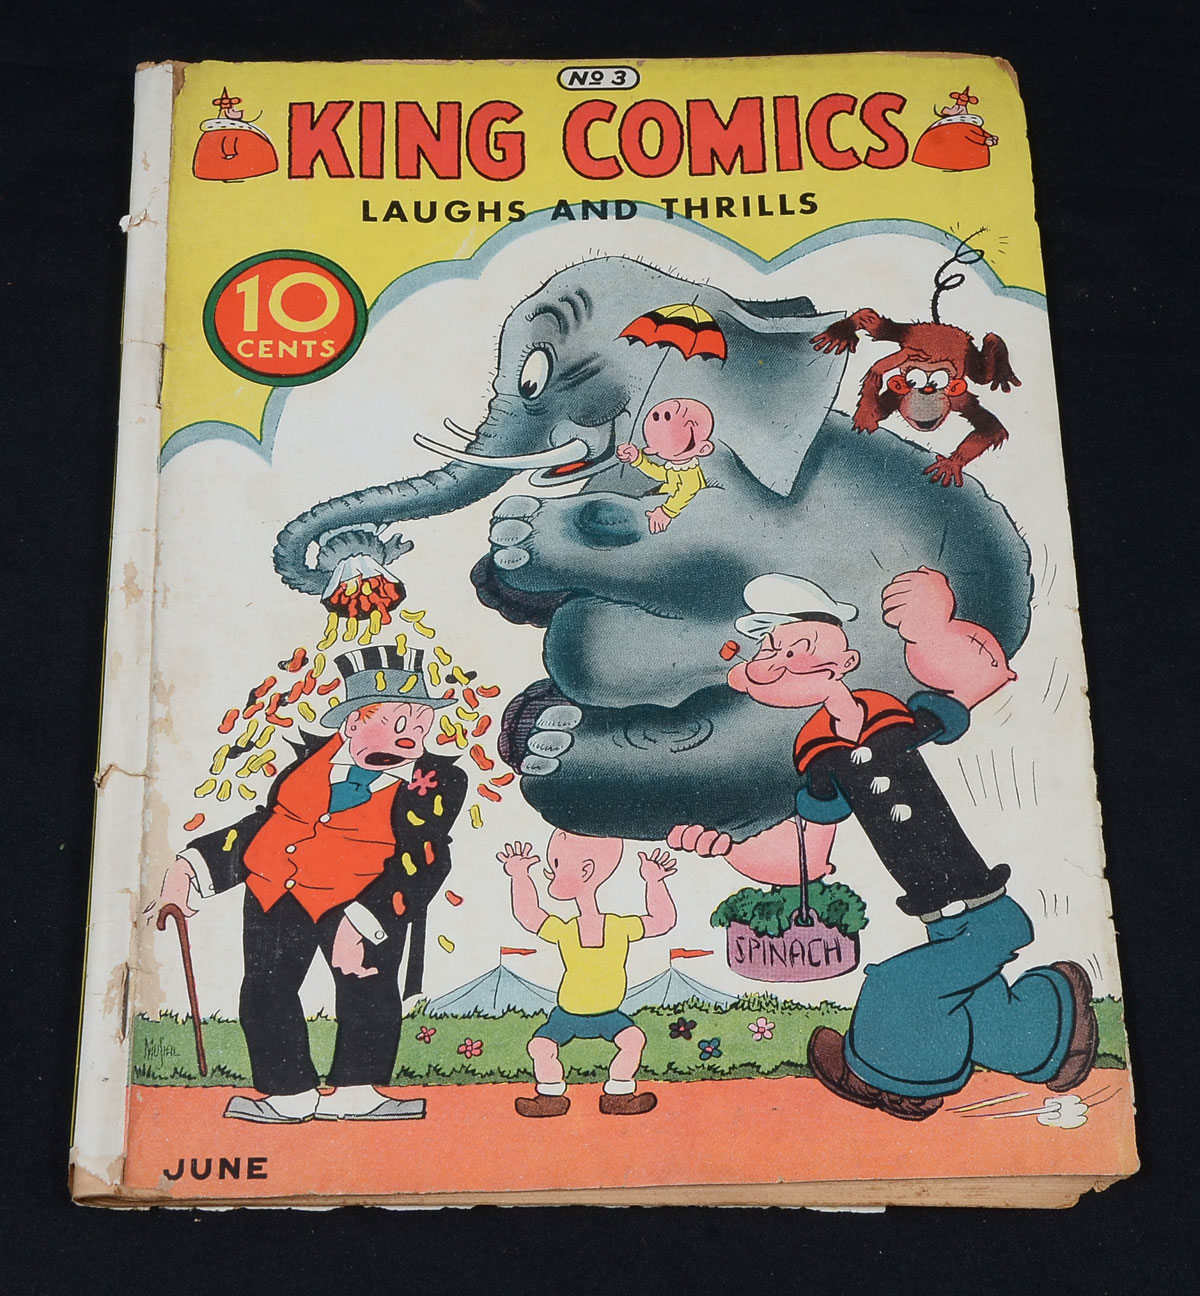 KING COMICS NO.3; JUNE 1936: June